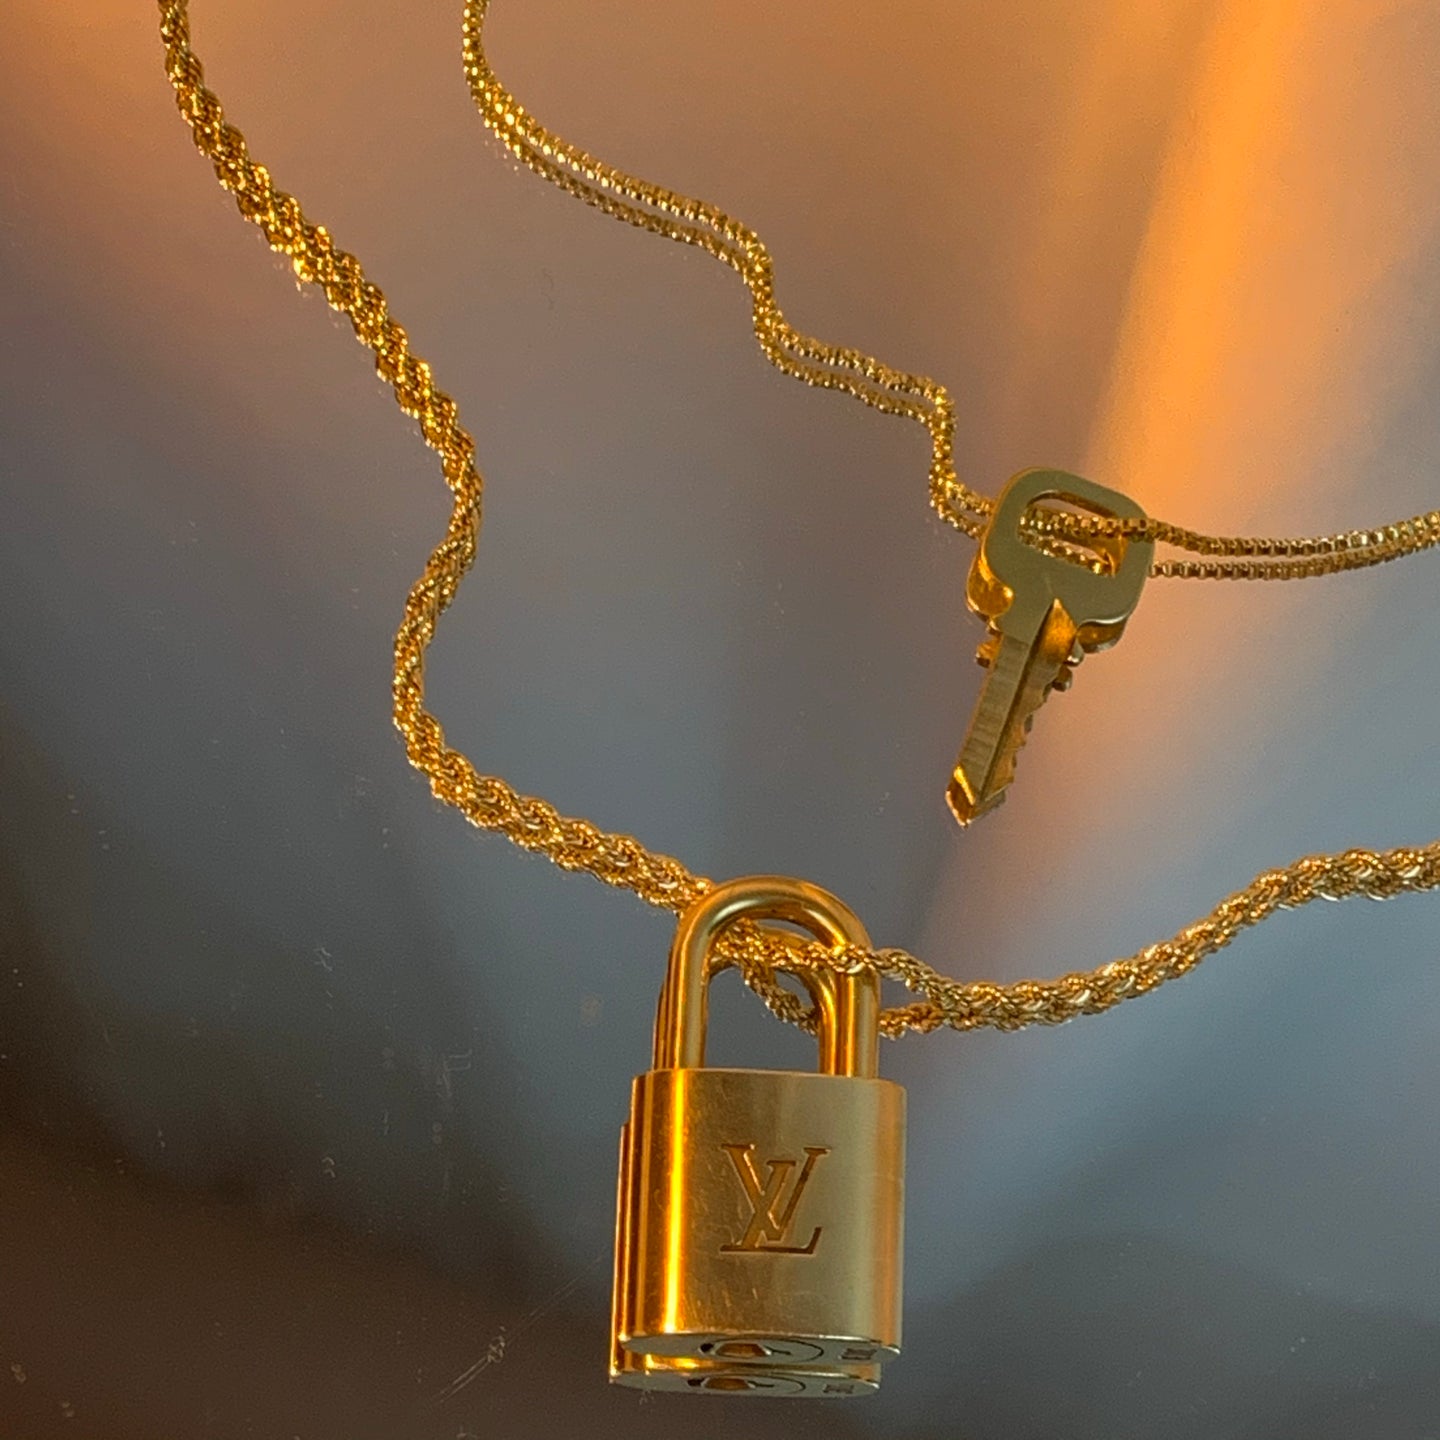 Louis Vuitton key necklace